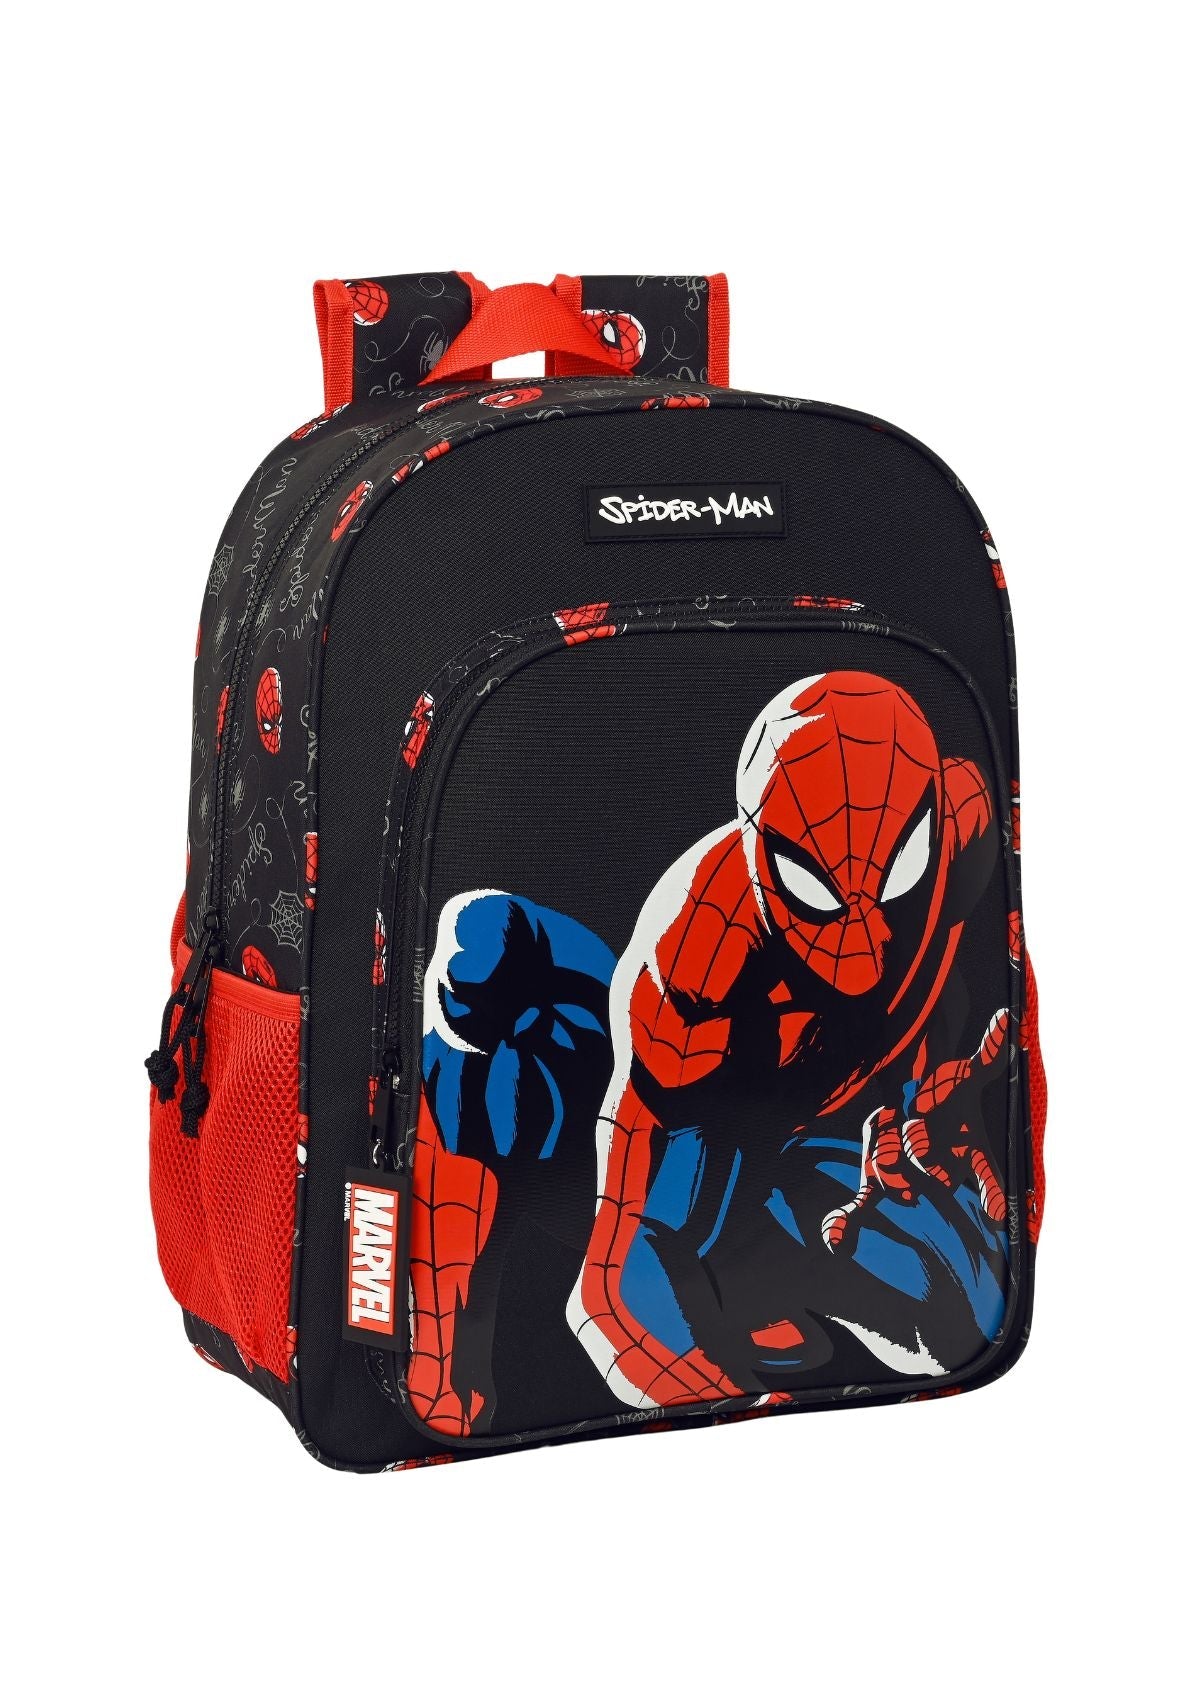 Spider-Man Large Backpack front